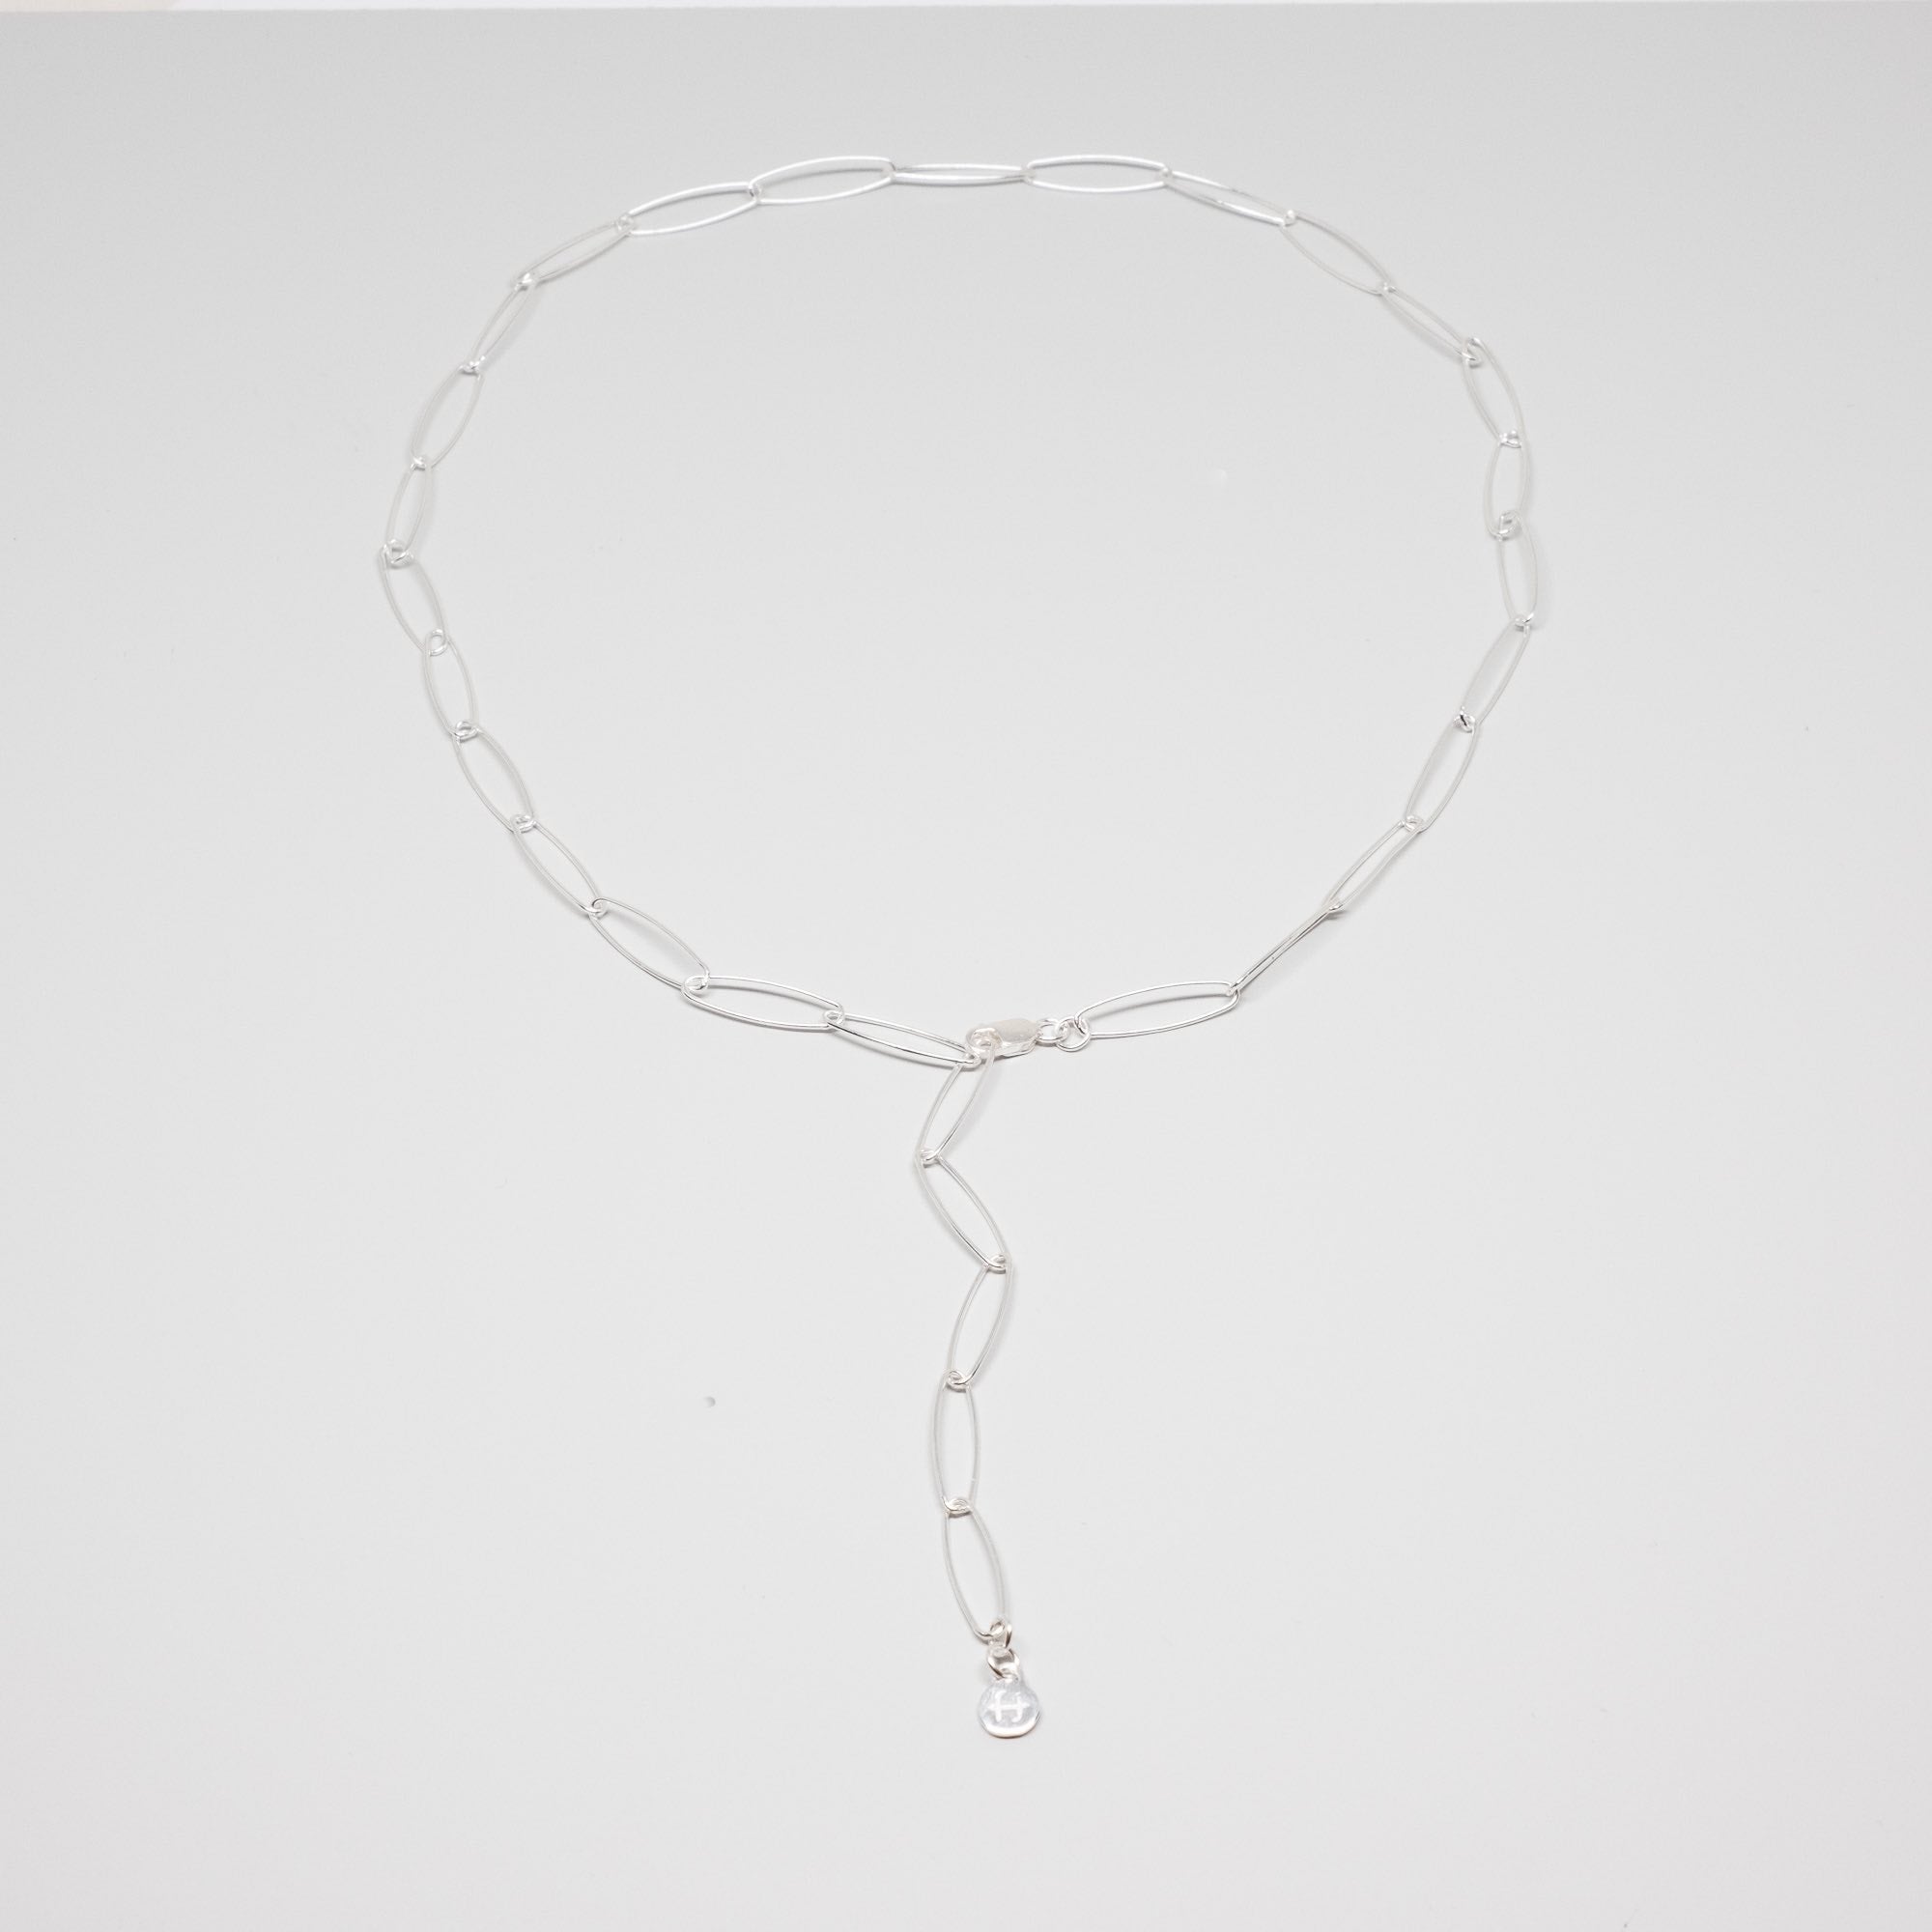 Gliederkette chain necklace silber